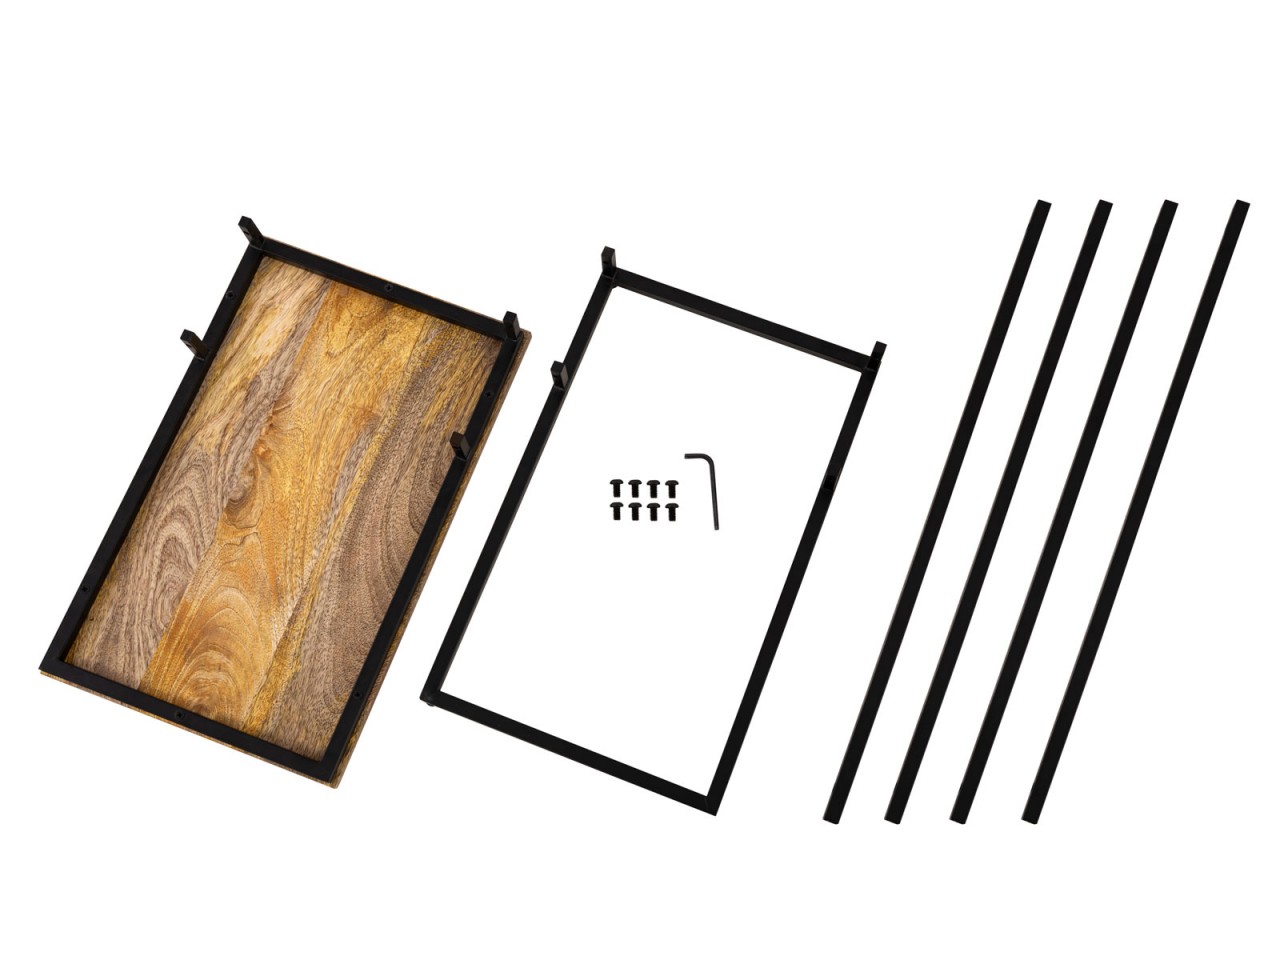 Beistelltisch Laptoptisch Holz 25x60x40cm nachhaltig Sofatisch C-Tisch Toronto Metall Gestell